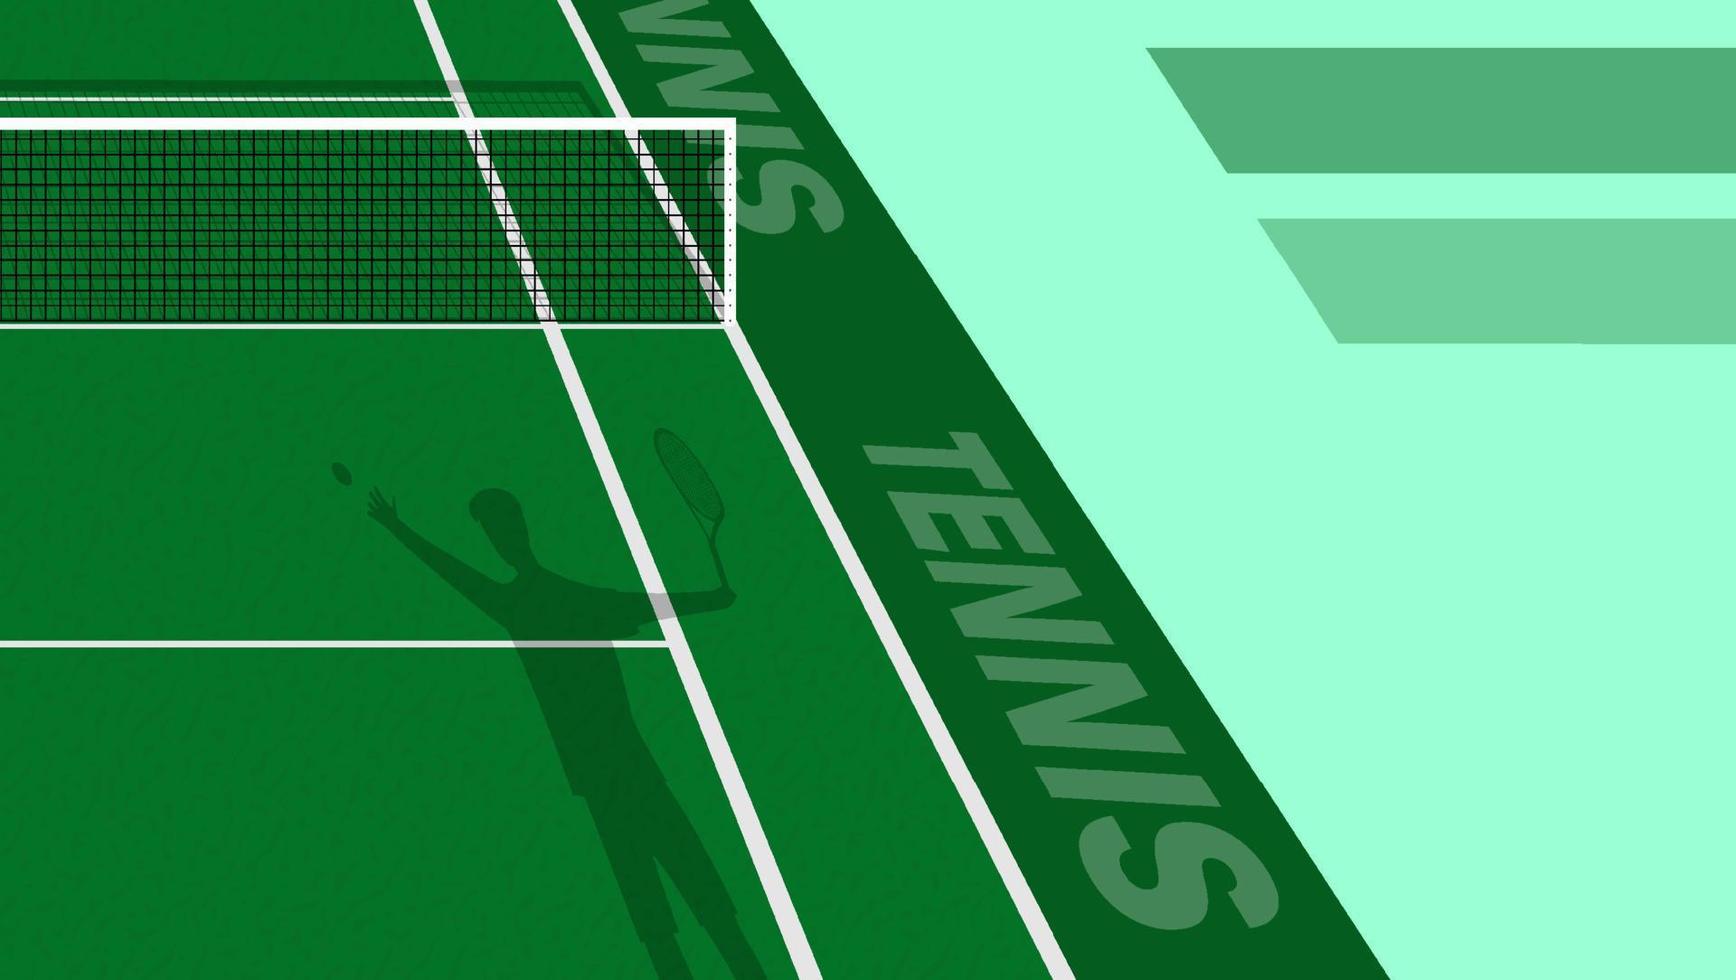 tennisspieler warf ball, um auf grünem platz zu dienen. Tennisplatz im Freien. Sportplatz für aktive Erholung. Vektor